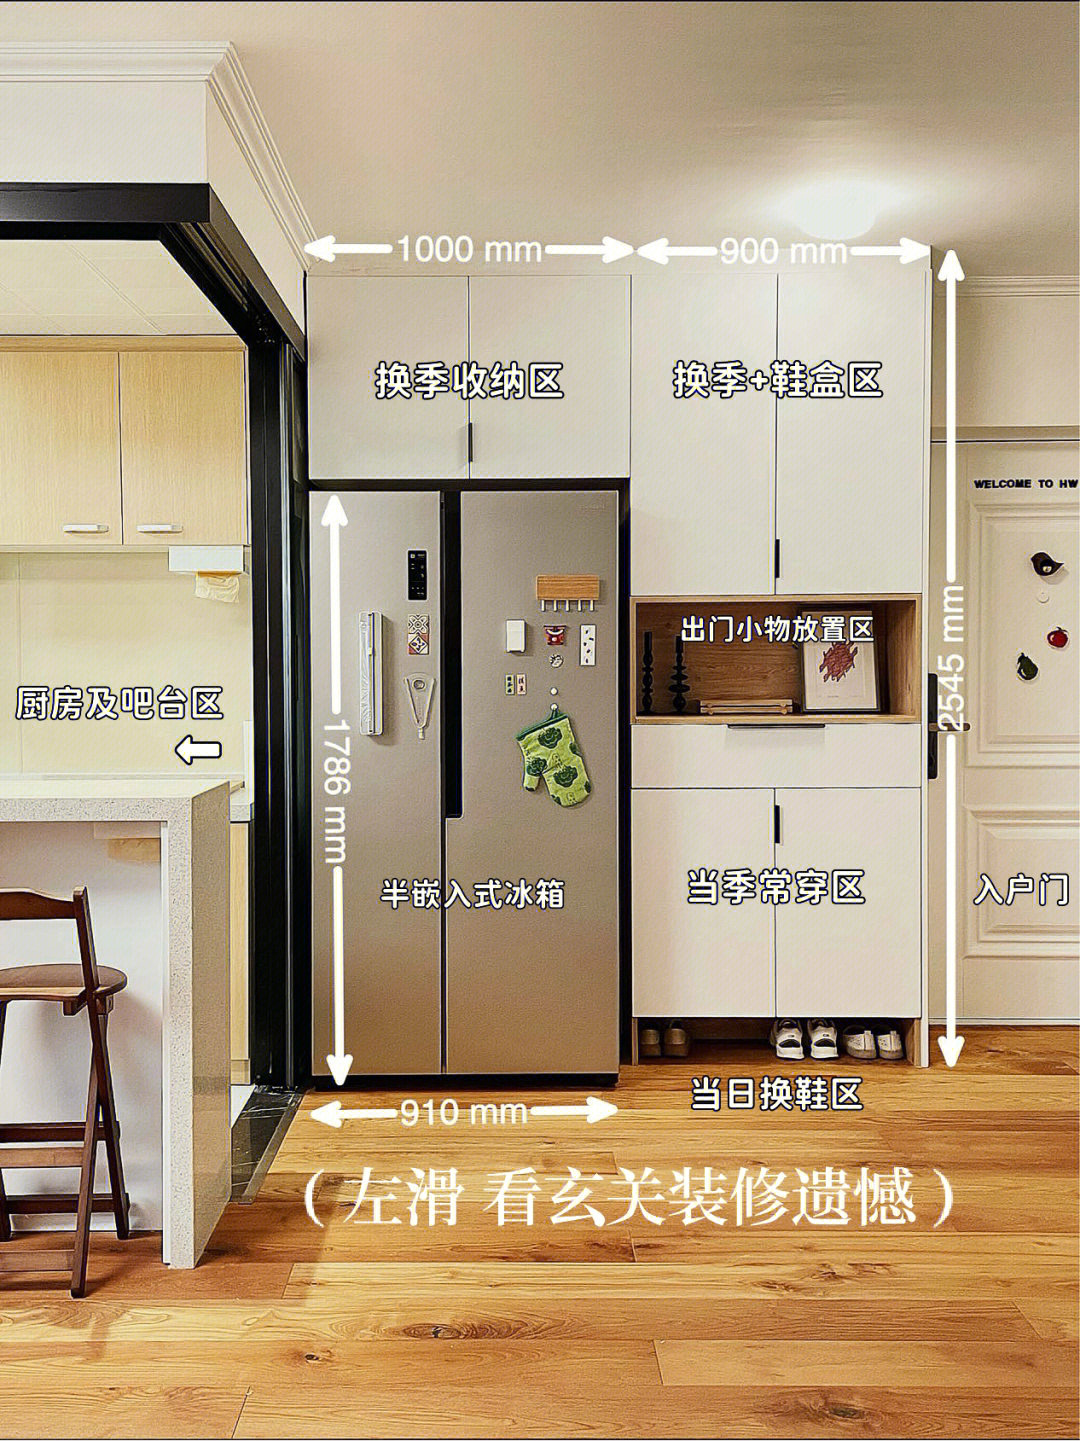 把冰箱挪到了厨房之外,嵌入鞋柜一体化设计,为了与冰箱尽量协调,加上